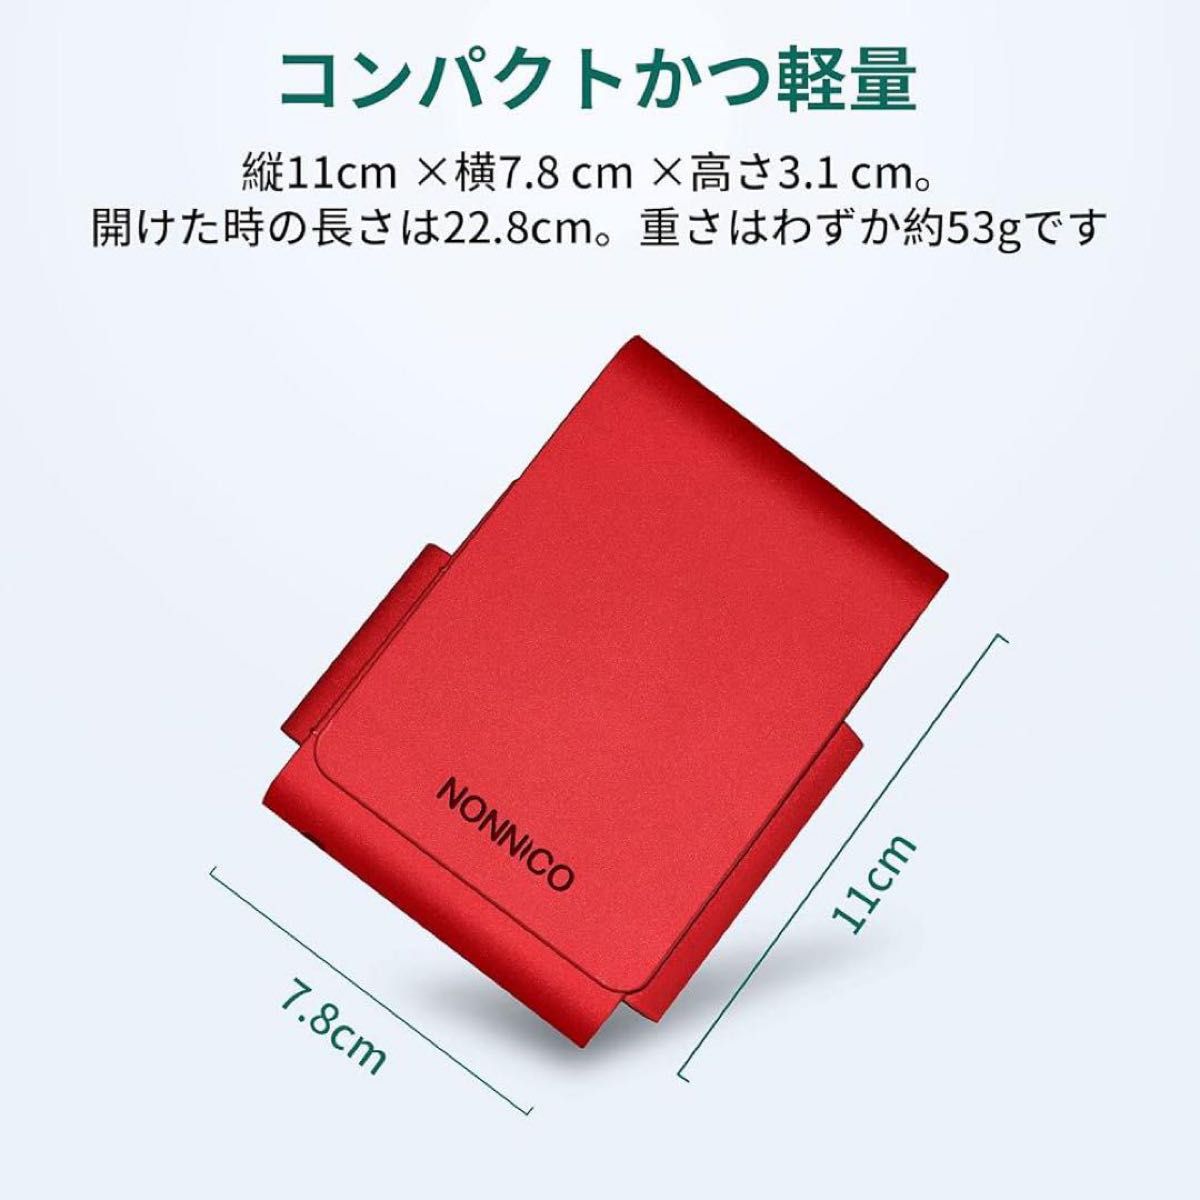 NONNICO H1専用レザーケース レッド 過熱式タバコ 収納ケース